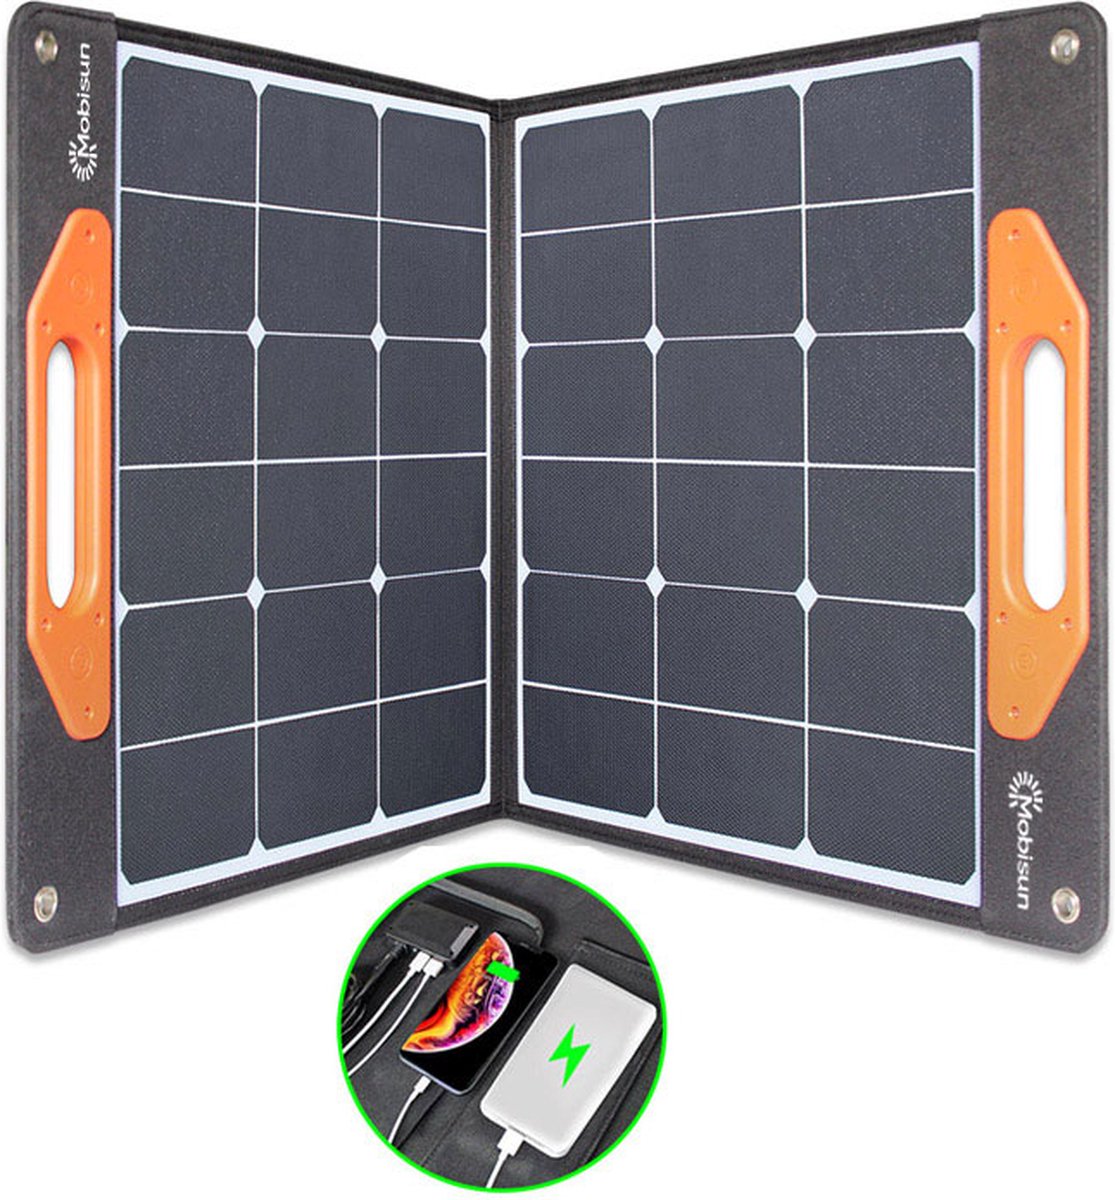 Groupe électrogène portable 1484Wh + 2 panneaux solaires pliables de 100W -  Mobisun